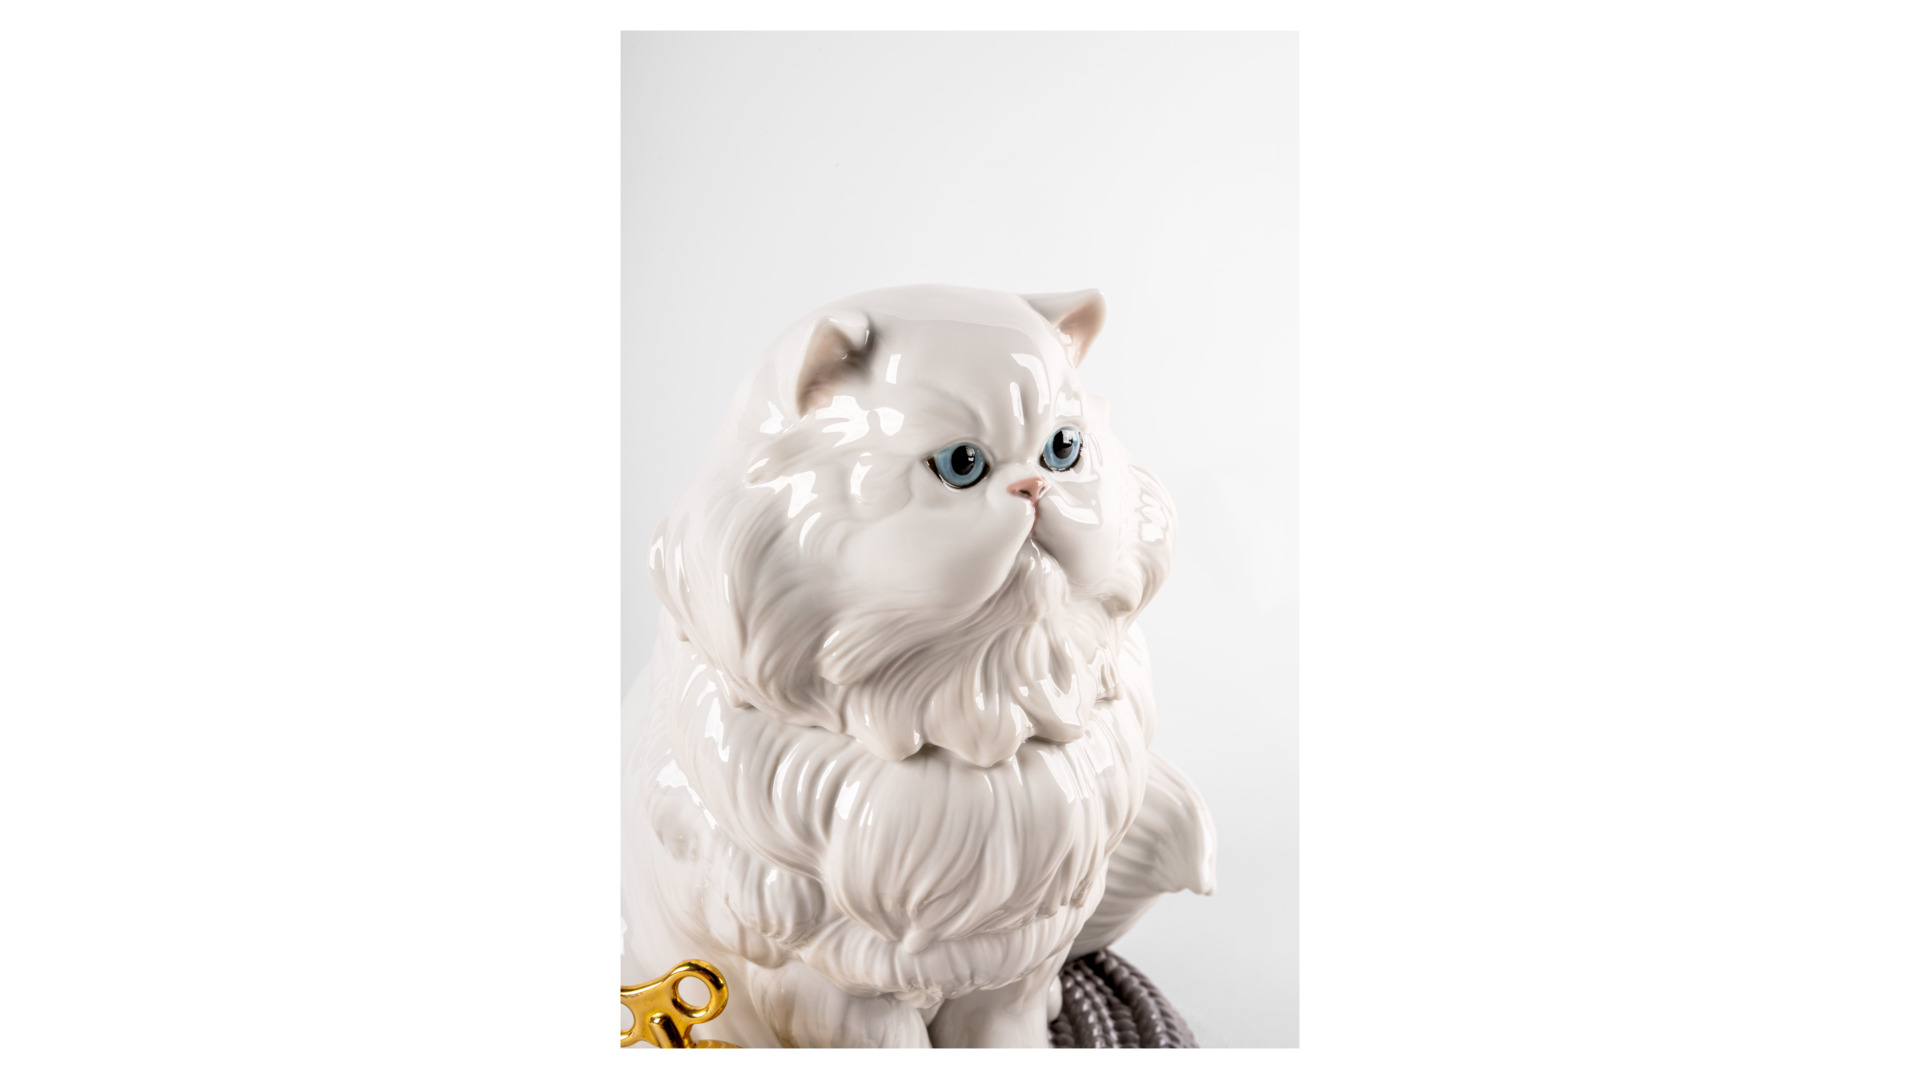 Фигурка Lladro Персидский кот 26х25х26 см, фарфор